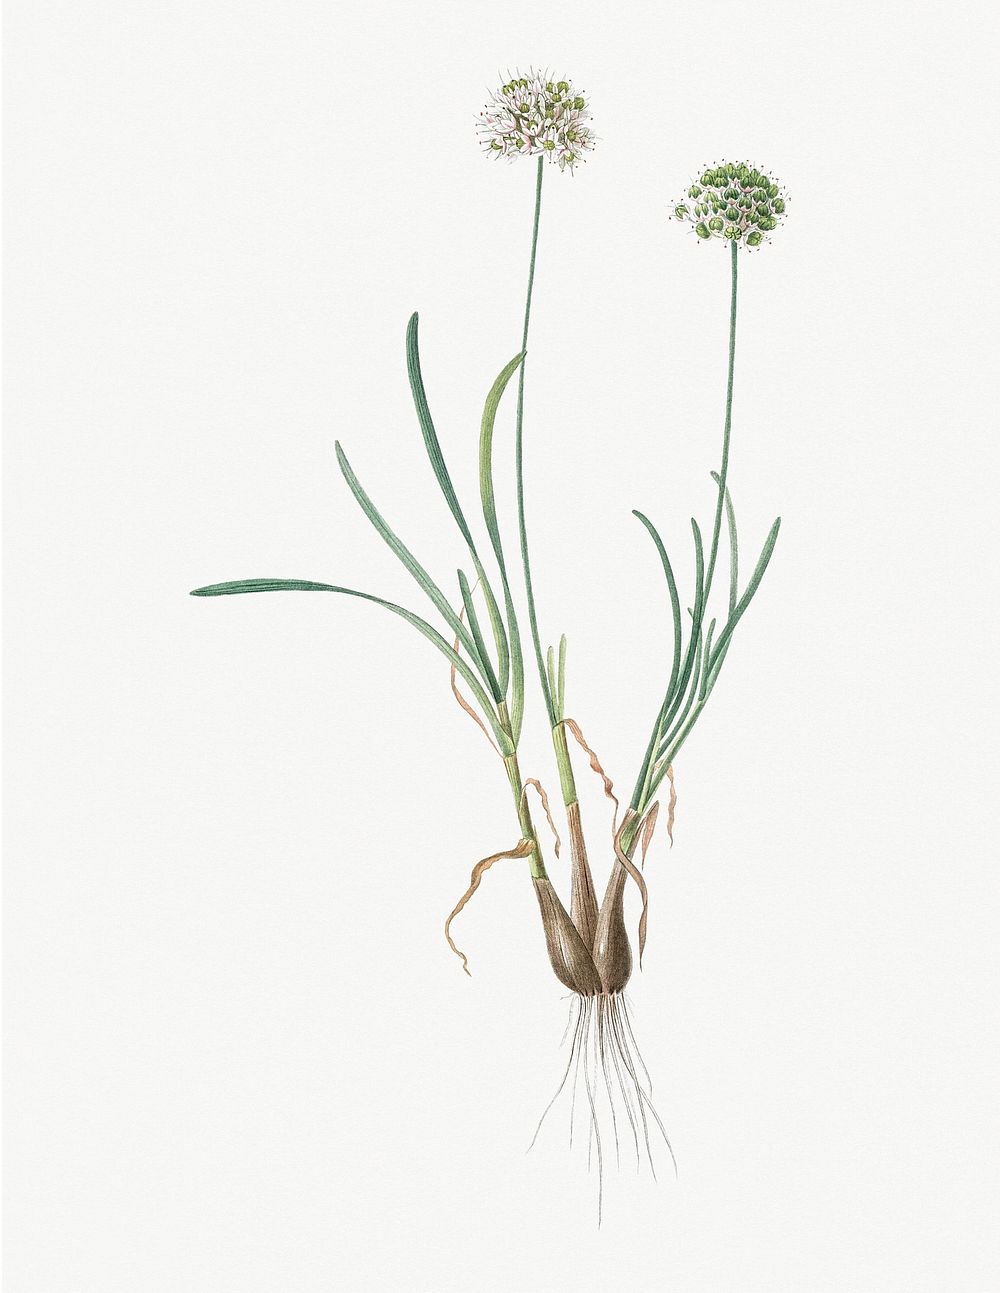 Vintage Illustration of Allium carolinianum